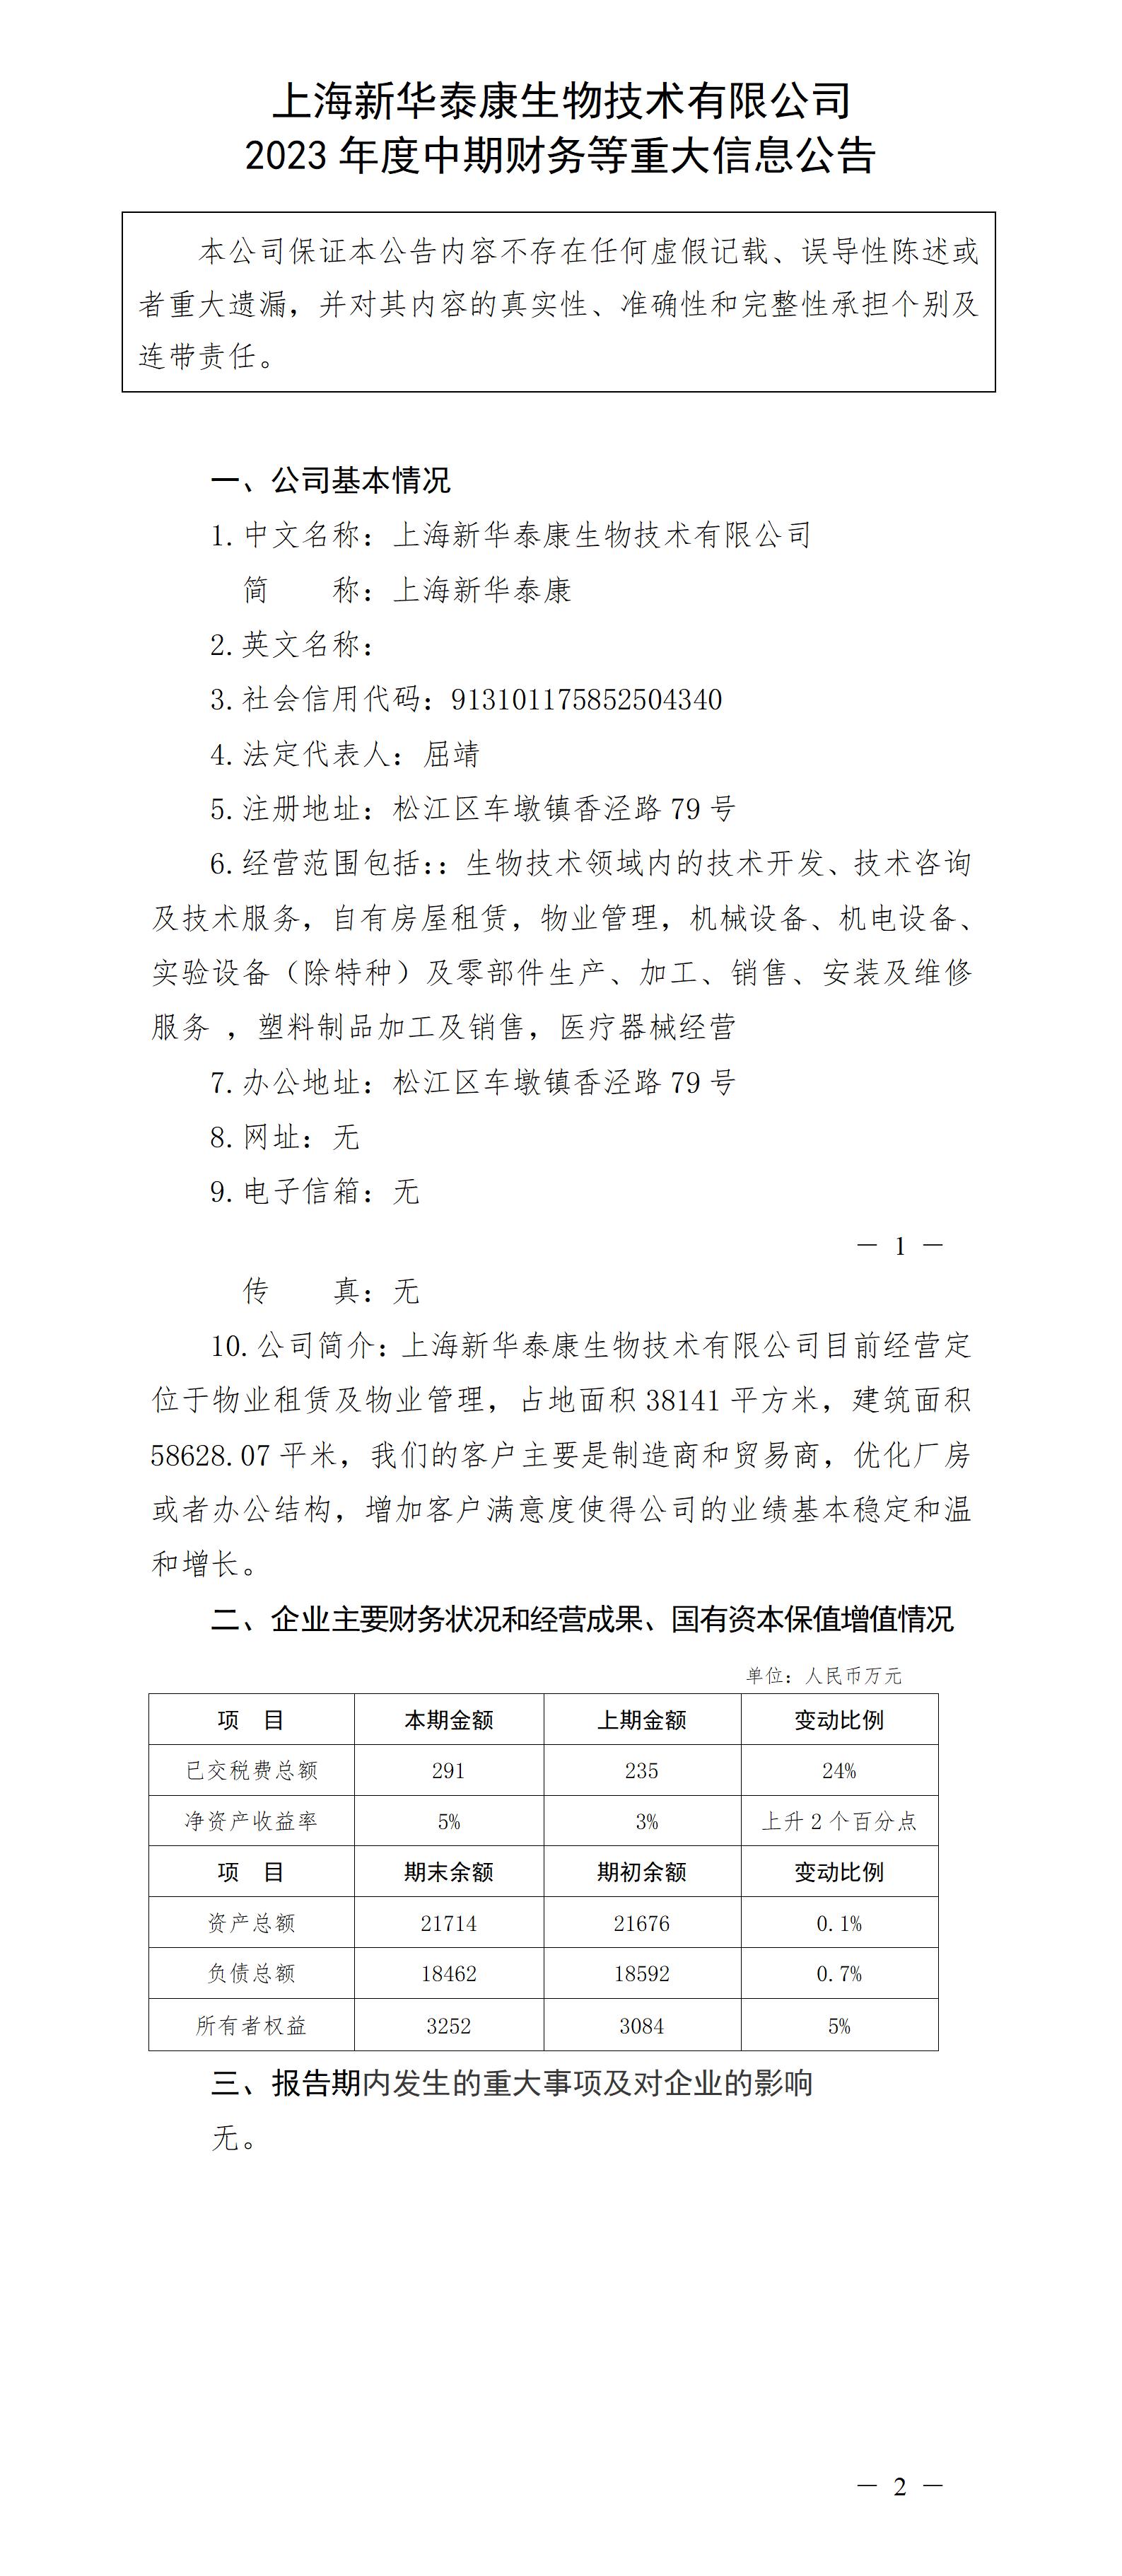 上海新华泰康生物技术有限公司2023年度中期财务等重大信息公告_01.jpg